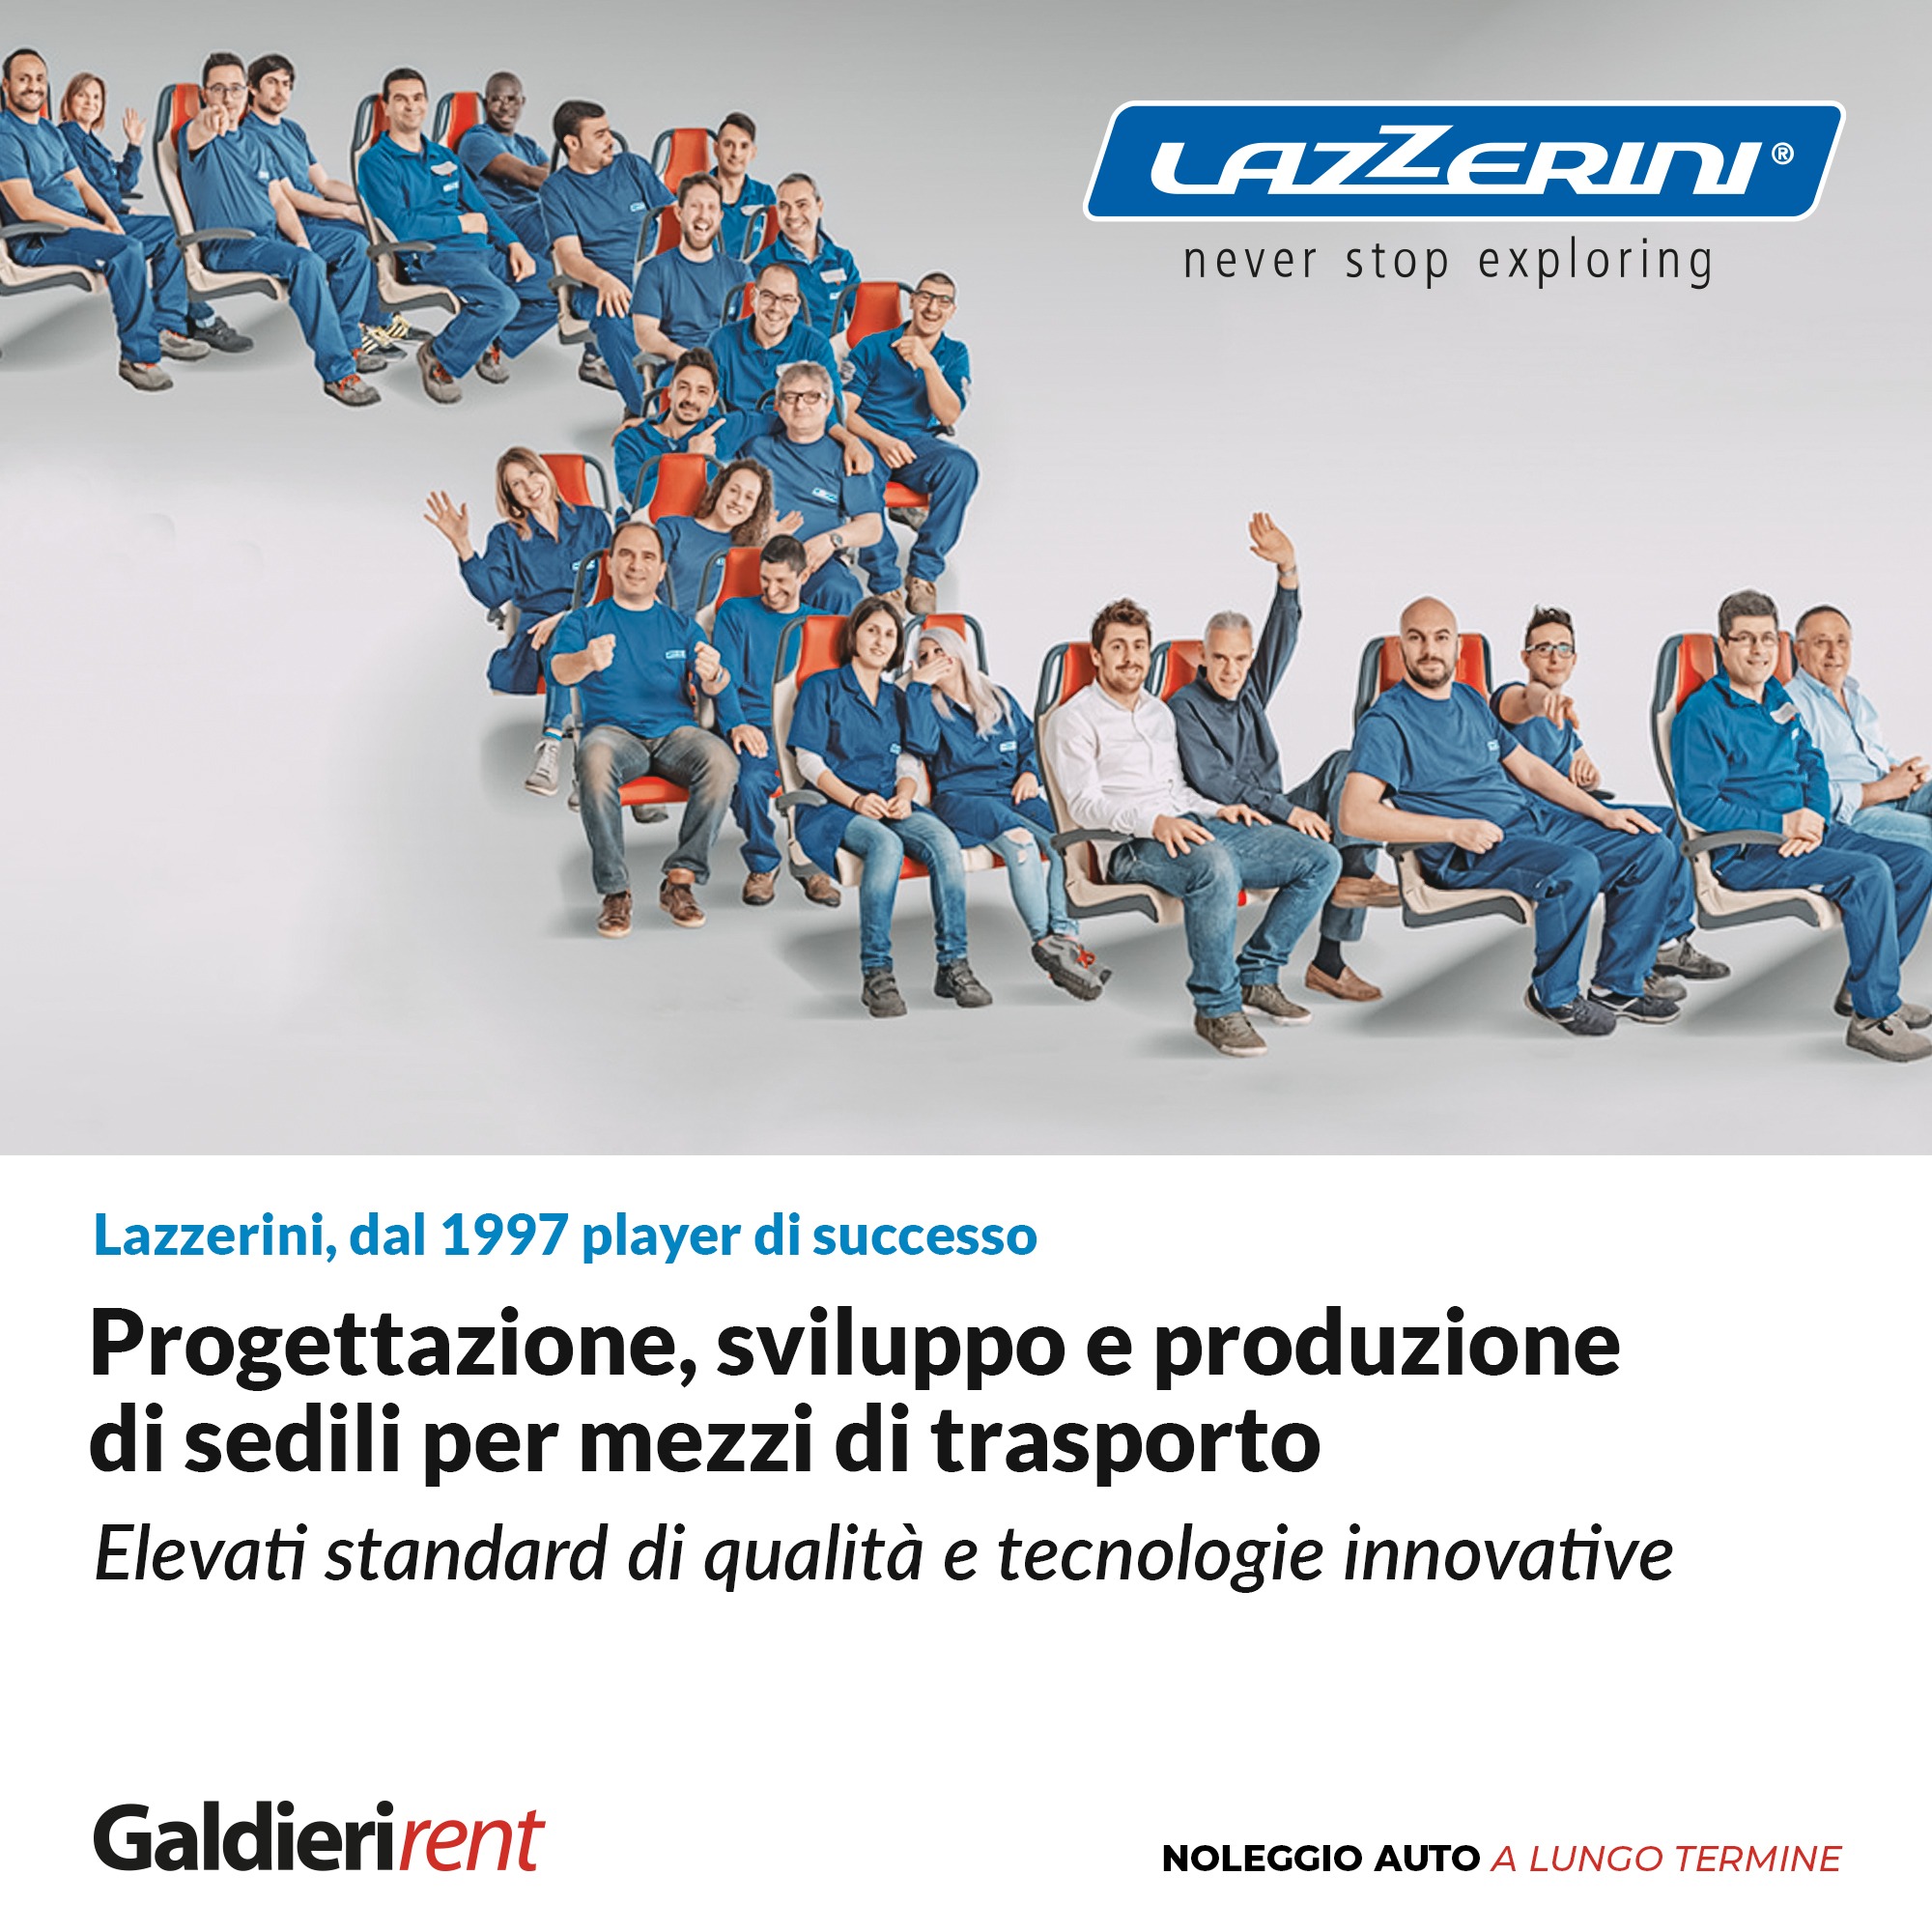 Lazzerini Srl: dal 1997 progettazione, sviluppo e produzione di sedili